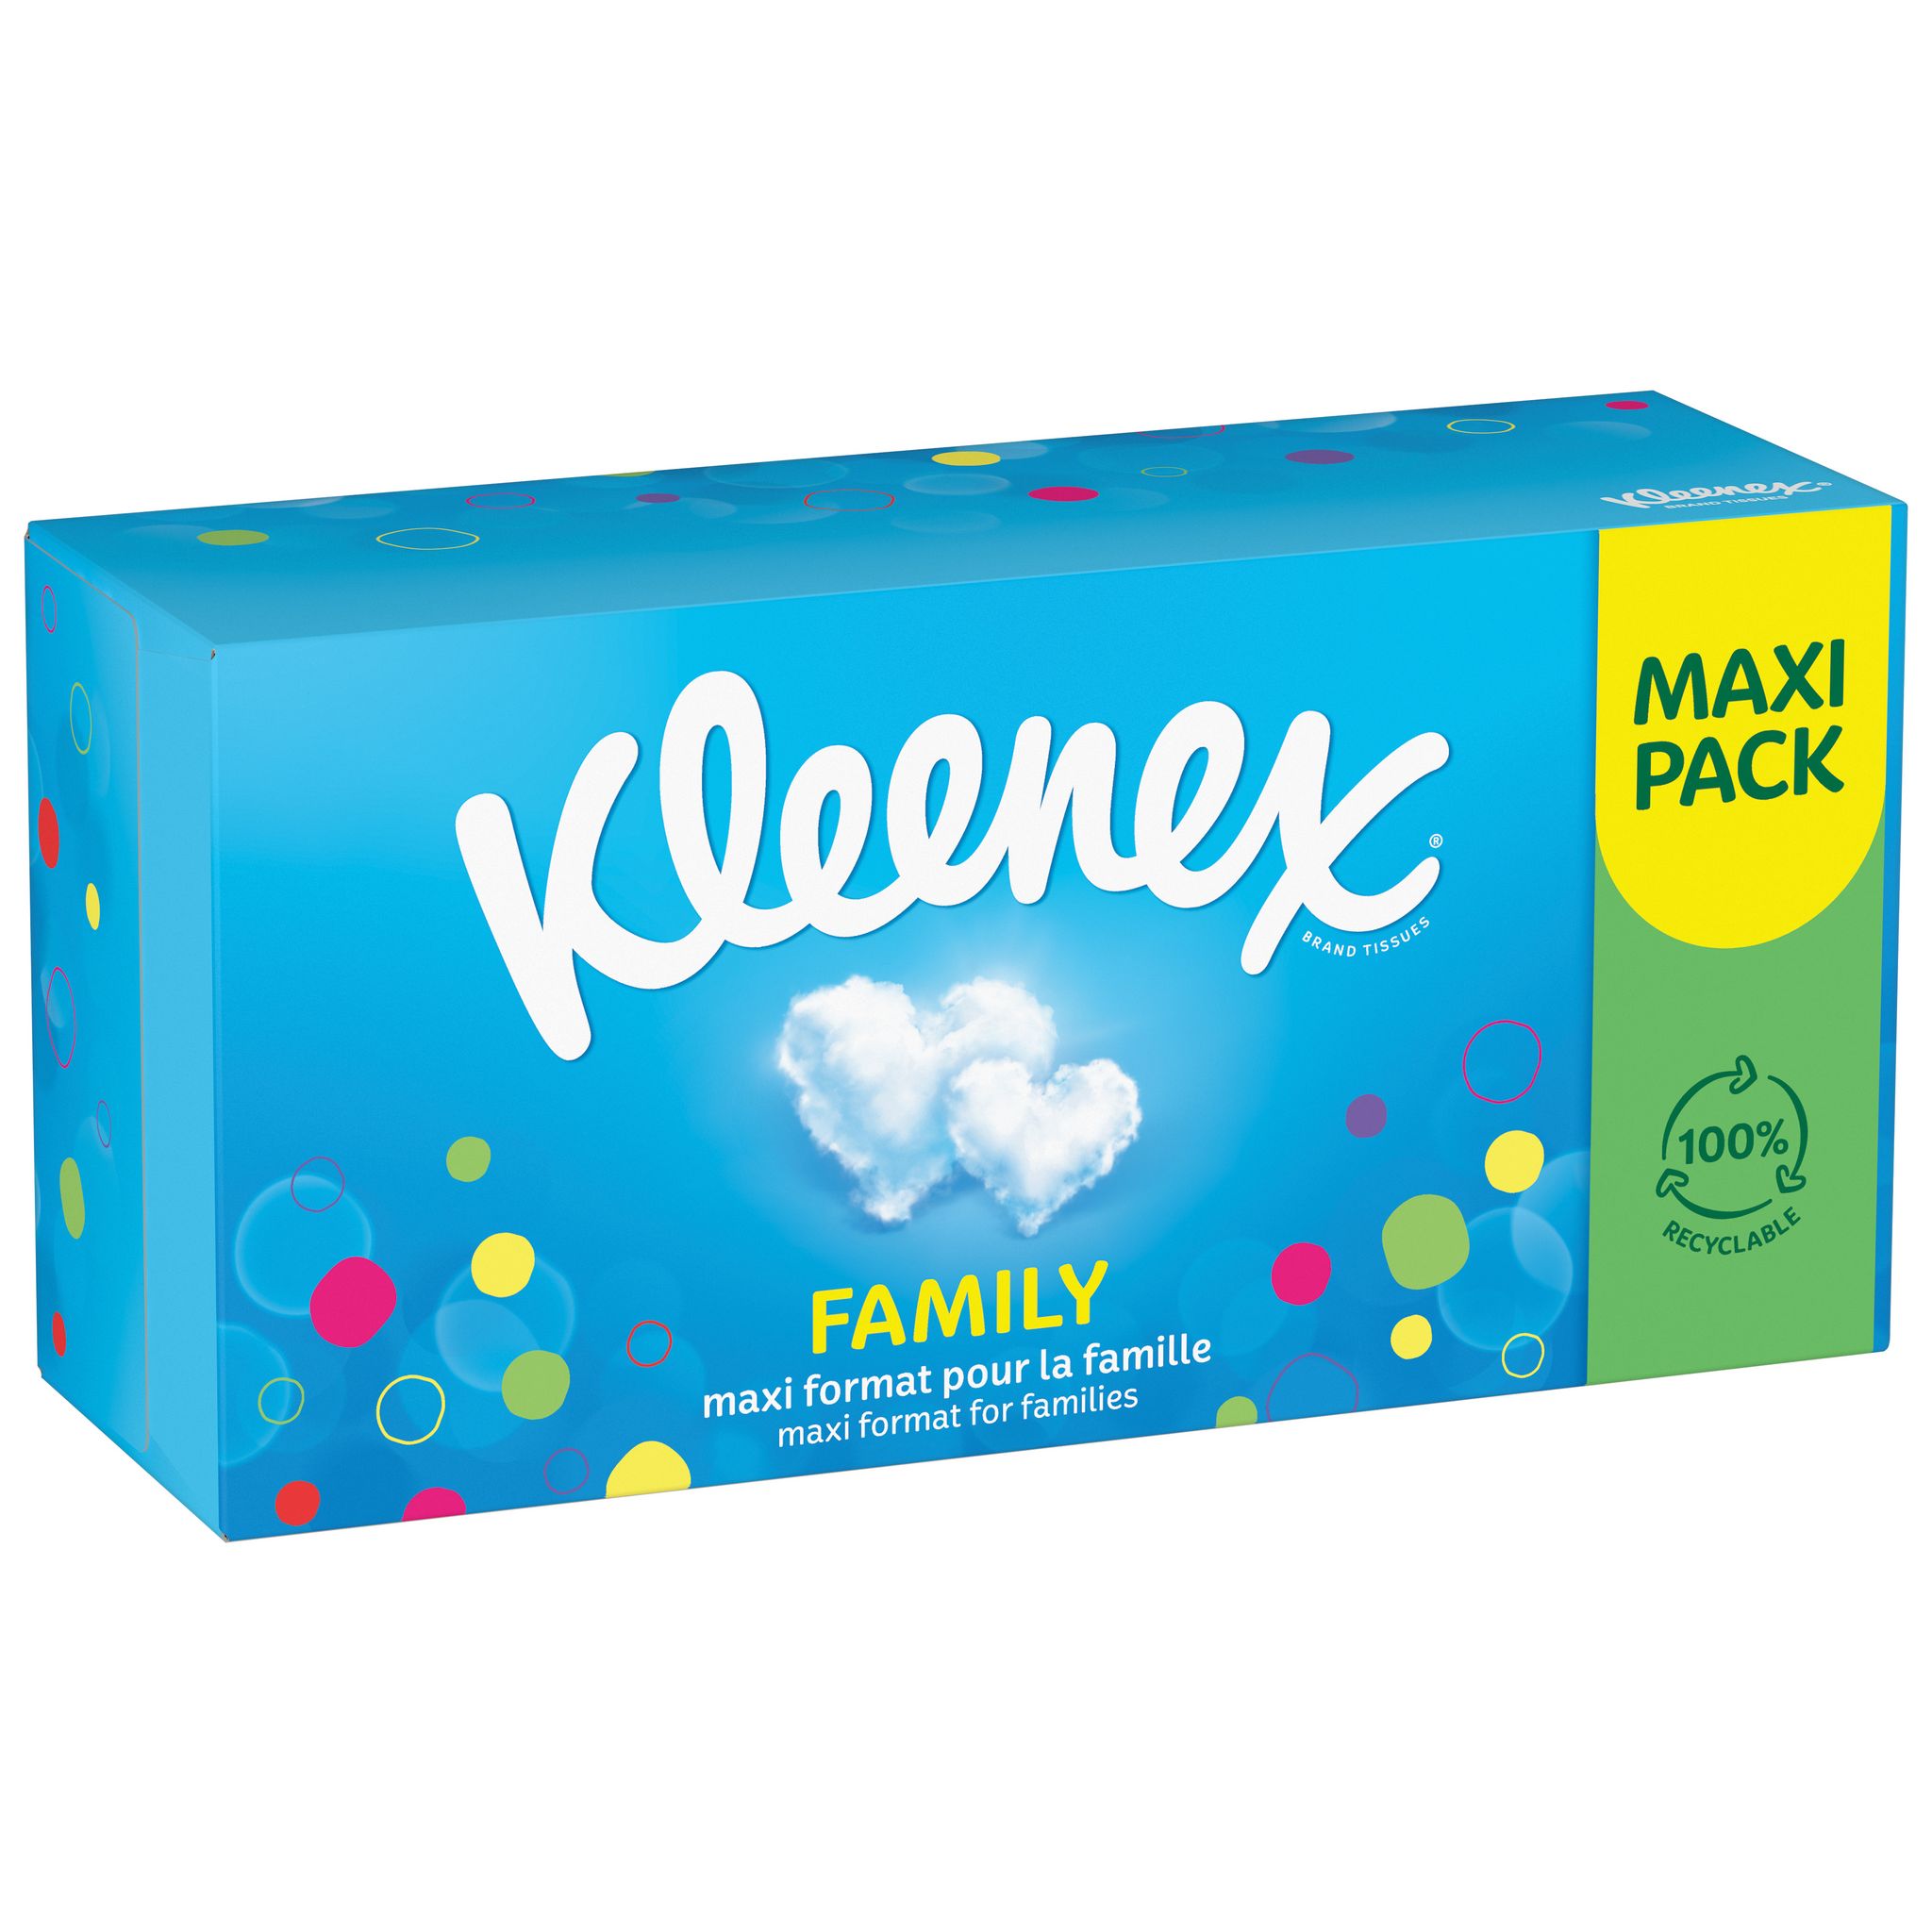 KLEENEX mouchoirs family boîte